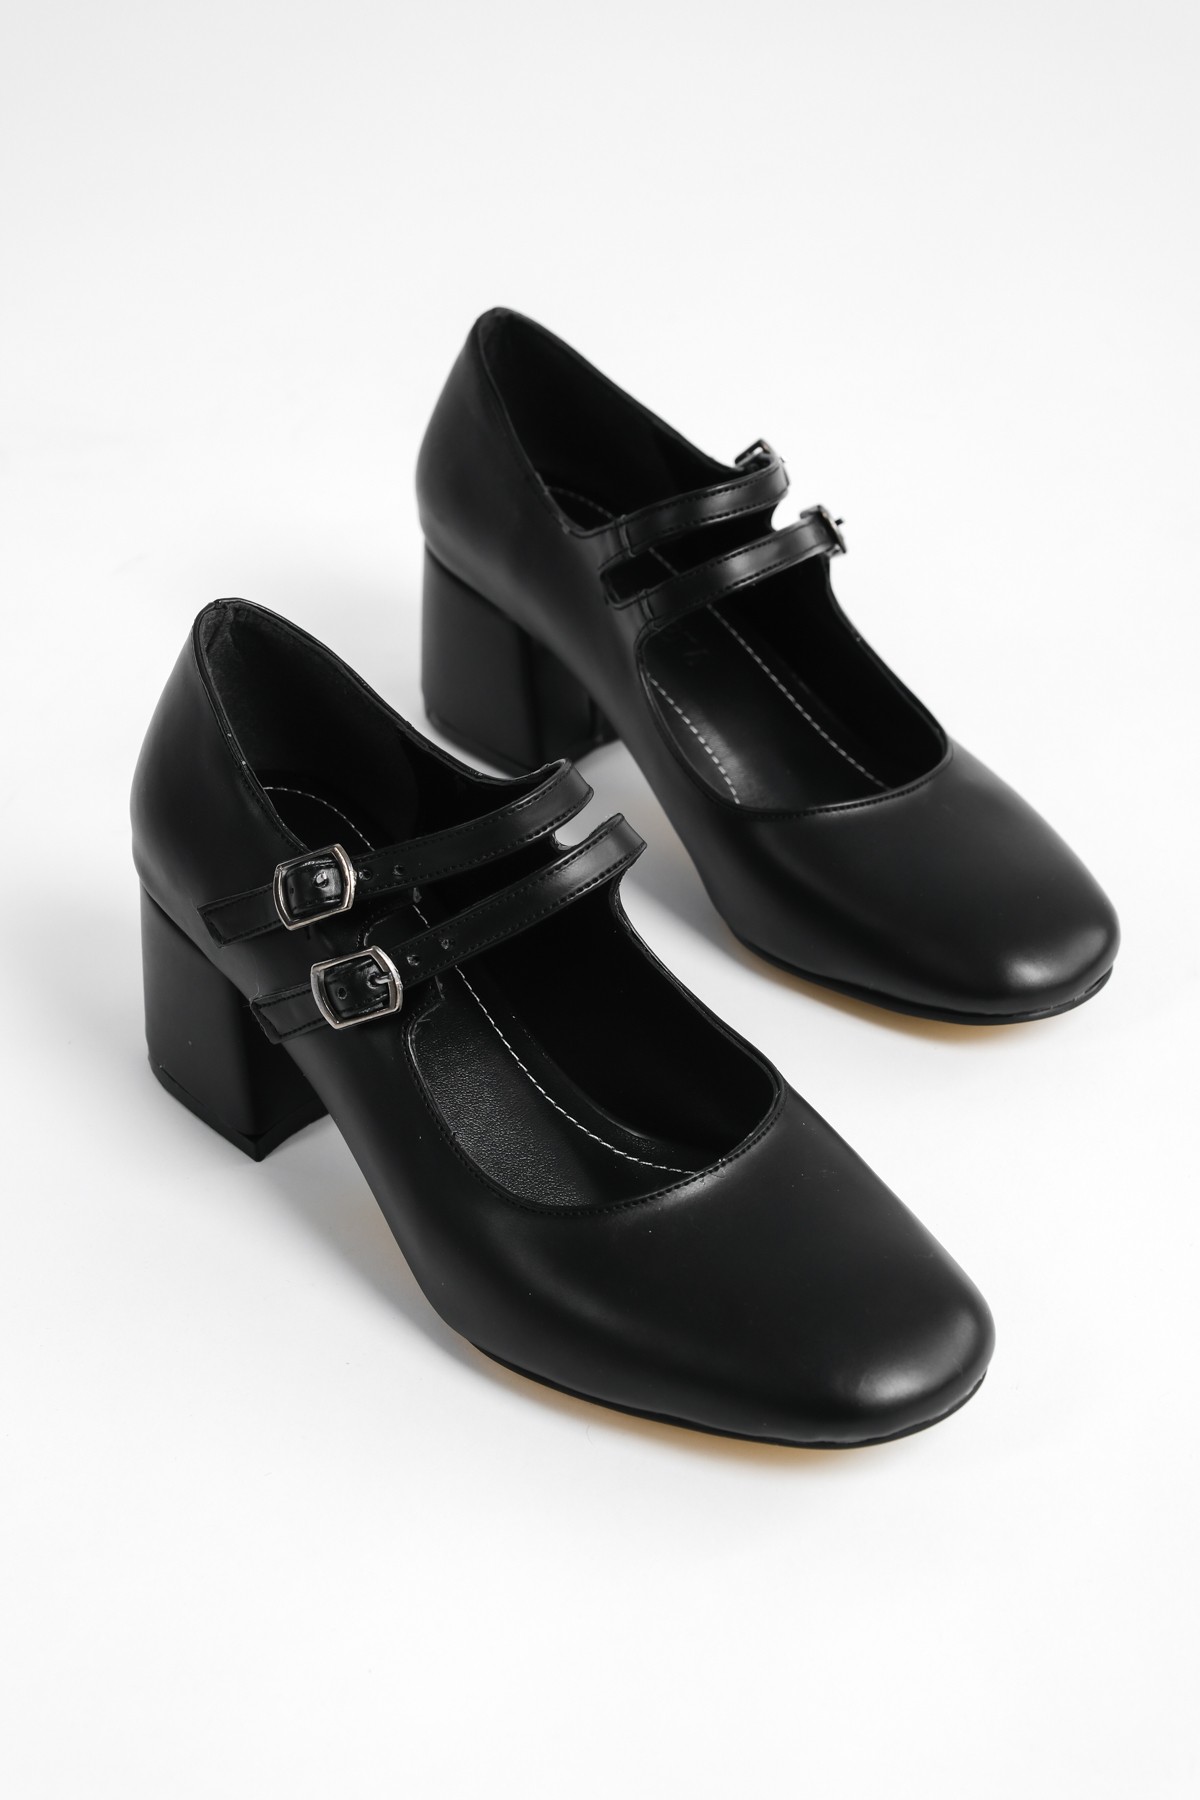 Bellver Kadın Kalın Topuklu Küt Burunlu Çift Bantlı Günlük Klasik Topuklu Ayakkabı